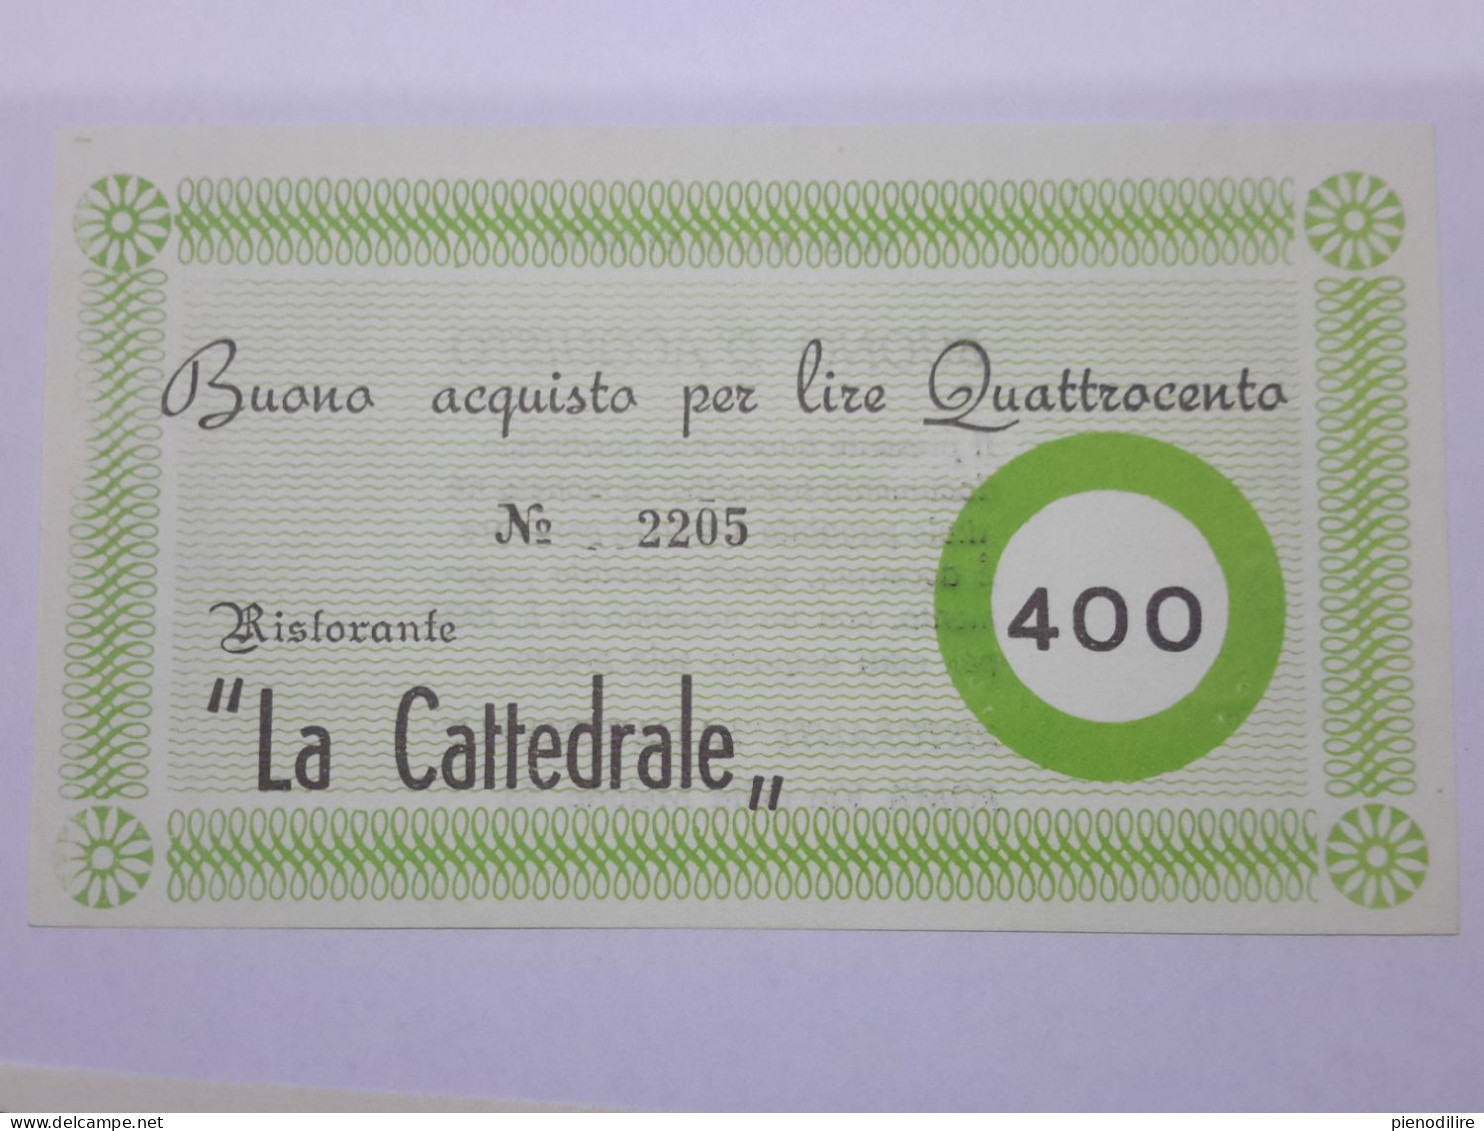 LOTTO 4Pz. 100 200 300 400 LIRE BUONI ACQUISTO RISTORANTE LA CATTEDRALE ROMA VALIDO FINO AL 31.12.1976 (A.4) - [10] Checks And Mini-checks